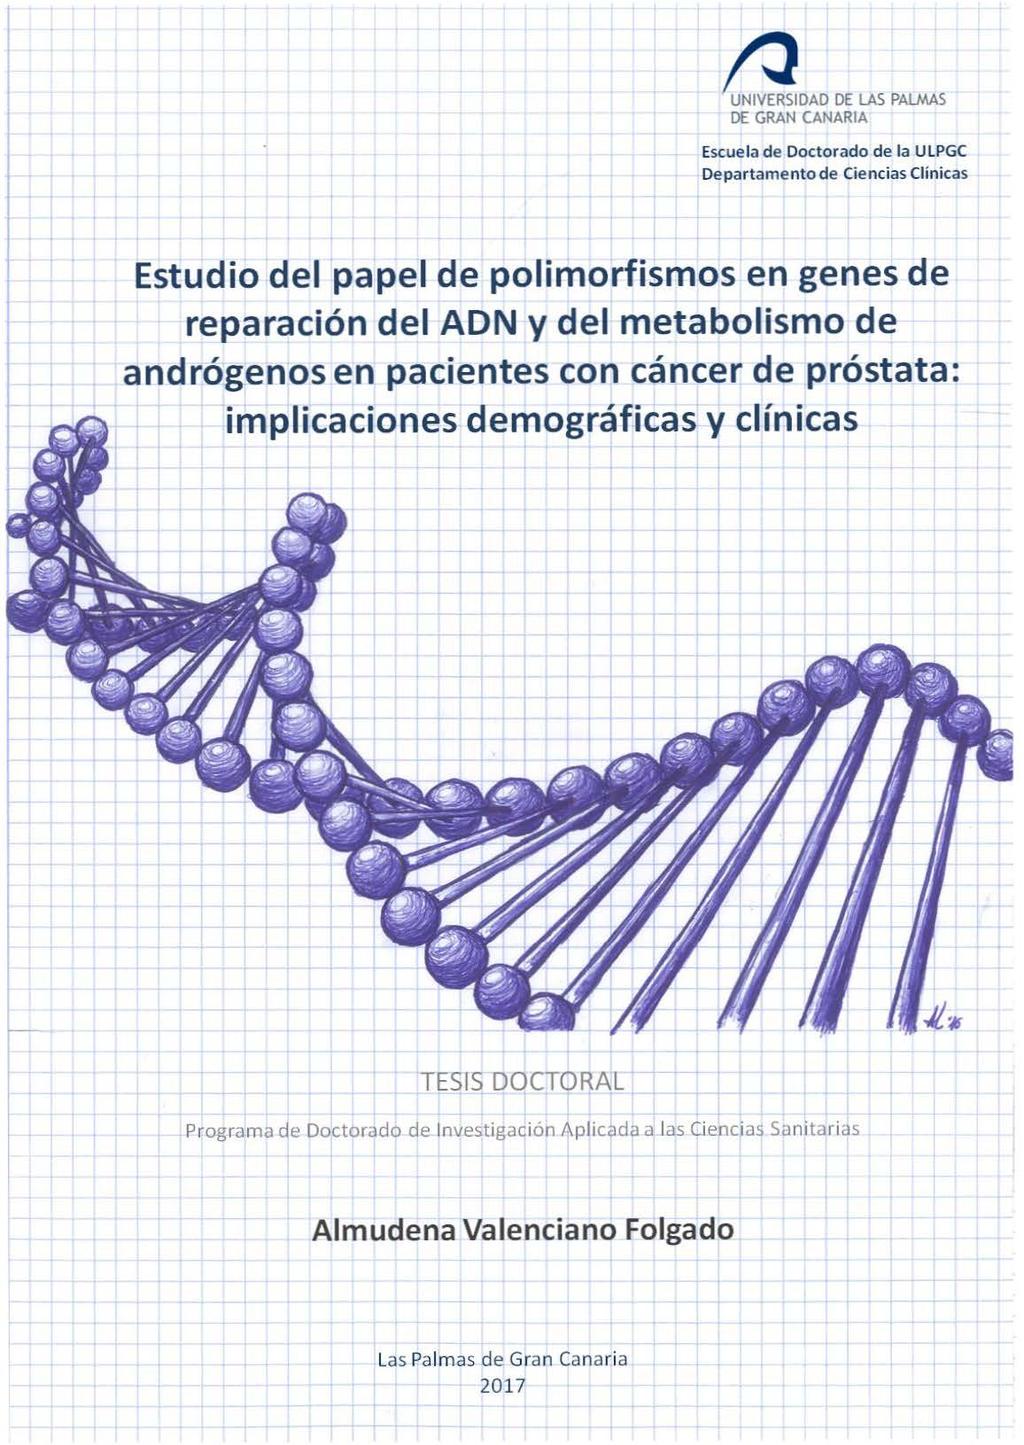 ª DAD DE LAS PALMAS DE GRAN CANARIA Escuela de Doctorado de la ULPGC Departamento de Ciencias Clínicas Estudio del papel de polimorfismos en genes de reparación del ADN y del metabolismo de